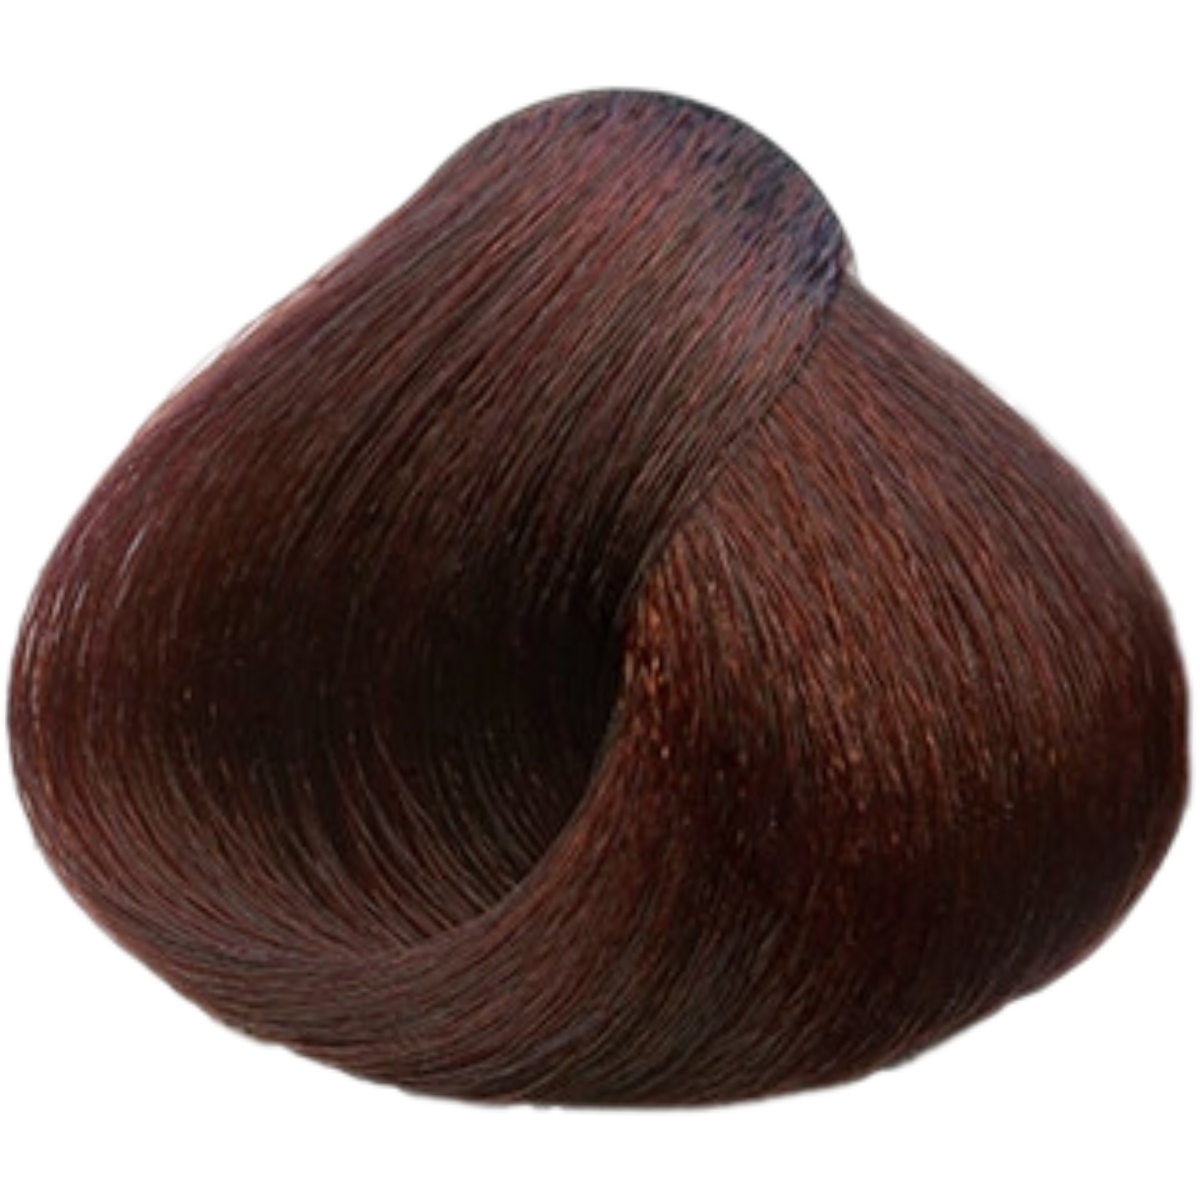 צבע שיער 6.5 DARK MAHOGANY BROWN פארמויטה FarmaVita צבע לשיער 60 גרם